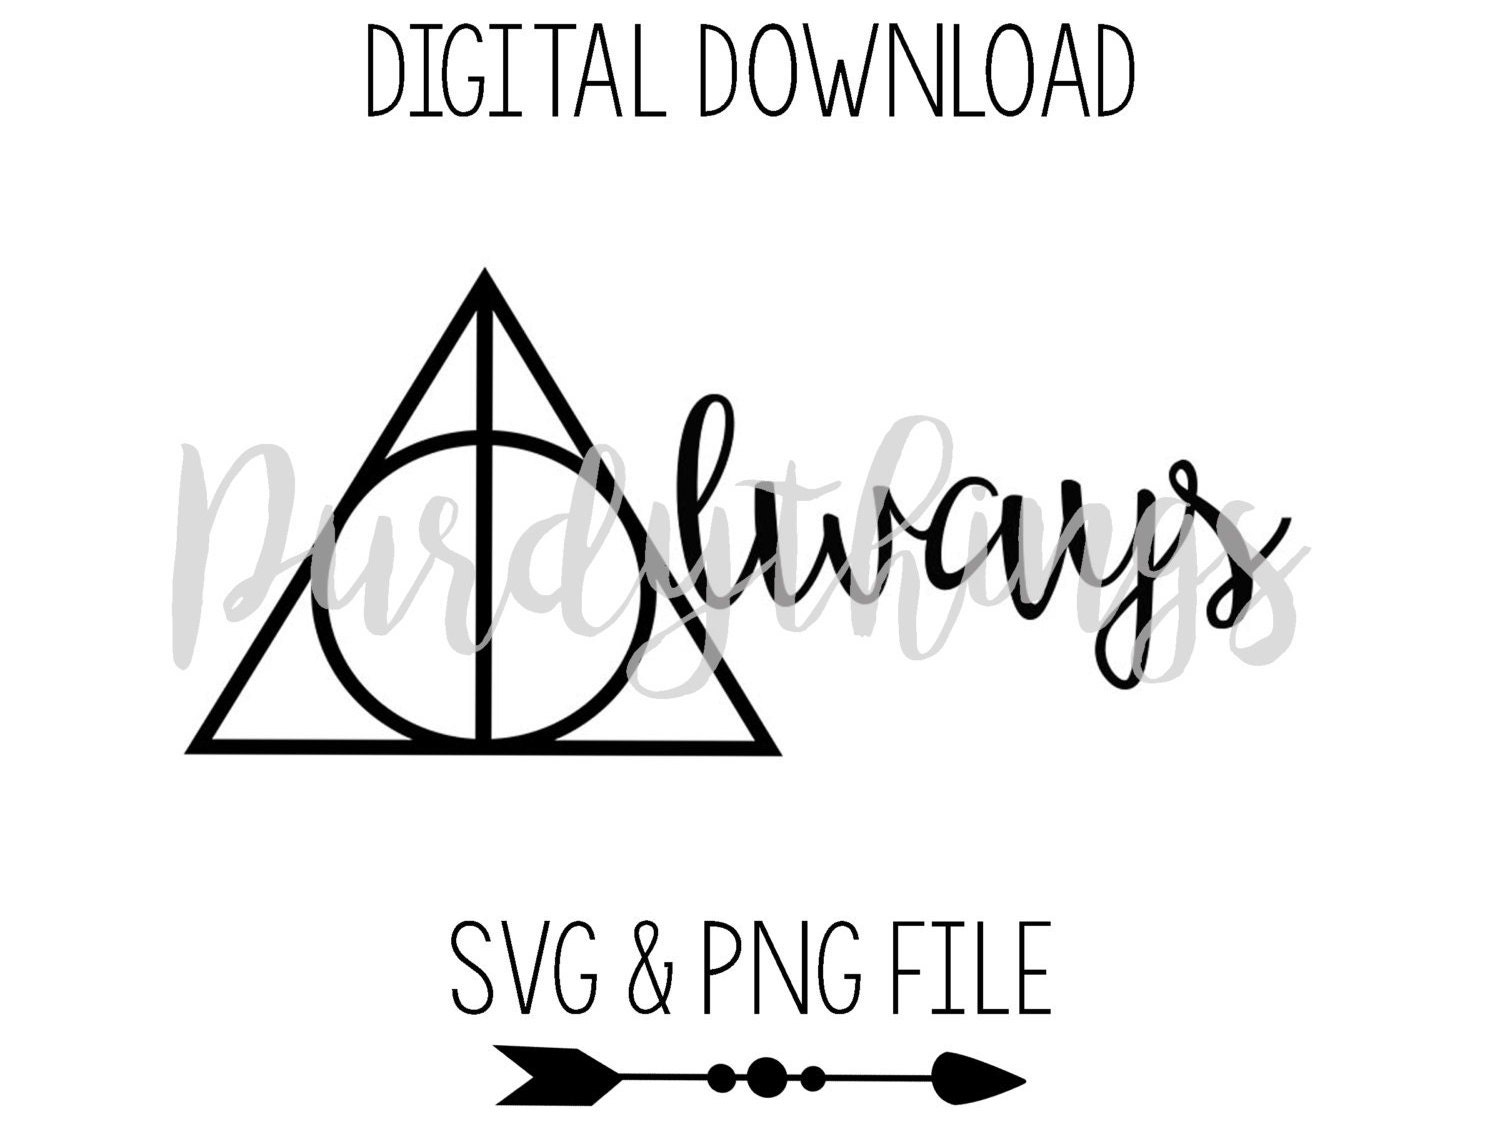 Harry Potter Always SVG PNG Digital File Instant Download